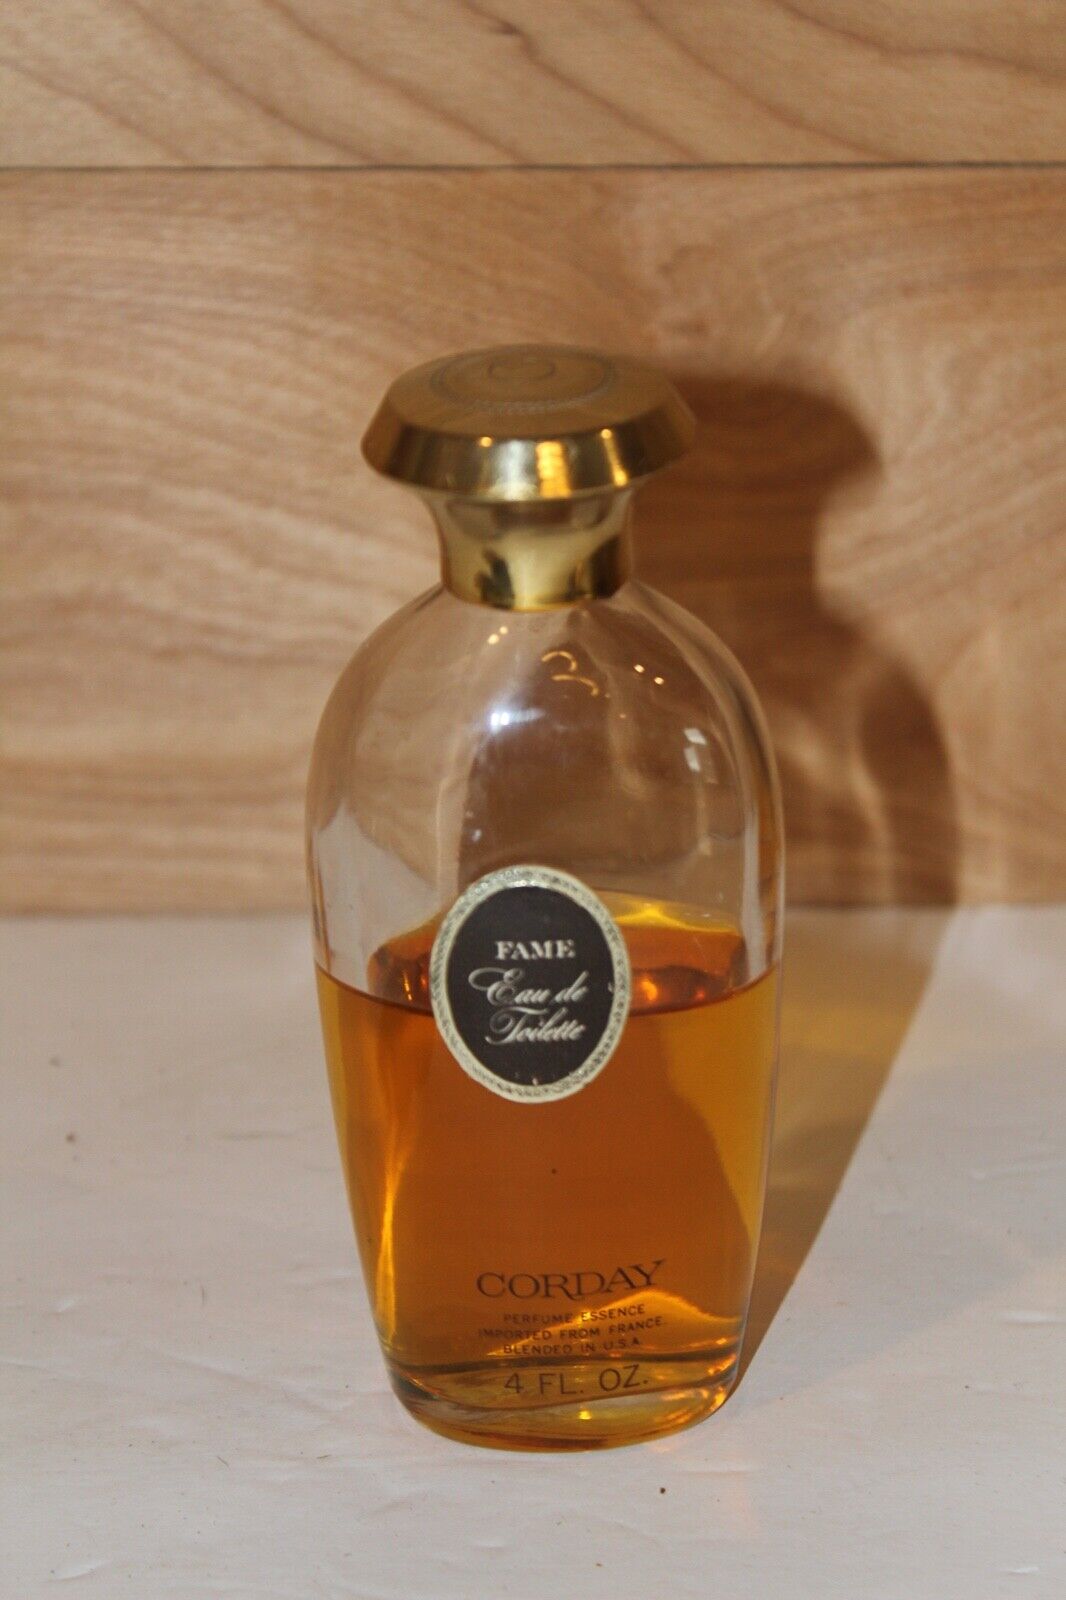 Vintage FAME By CORDAY Eau De Toilette 4 oz. Large Bottle Splash Perfume